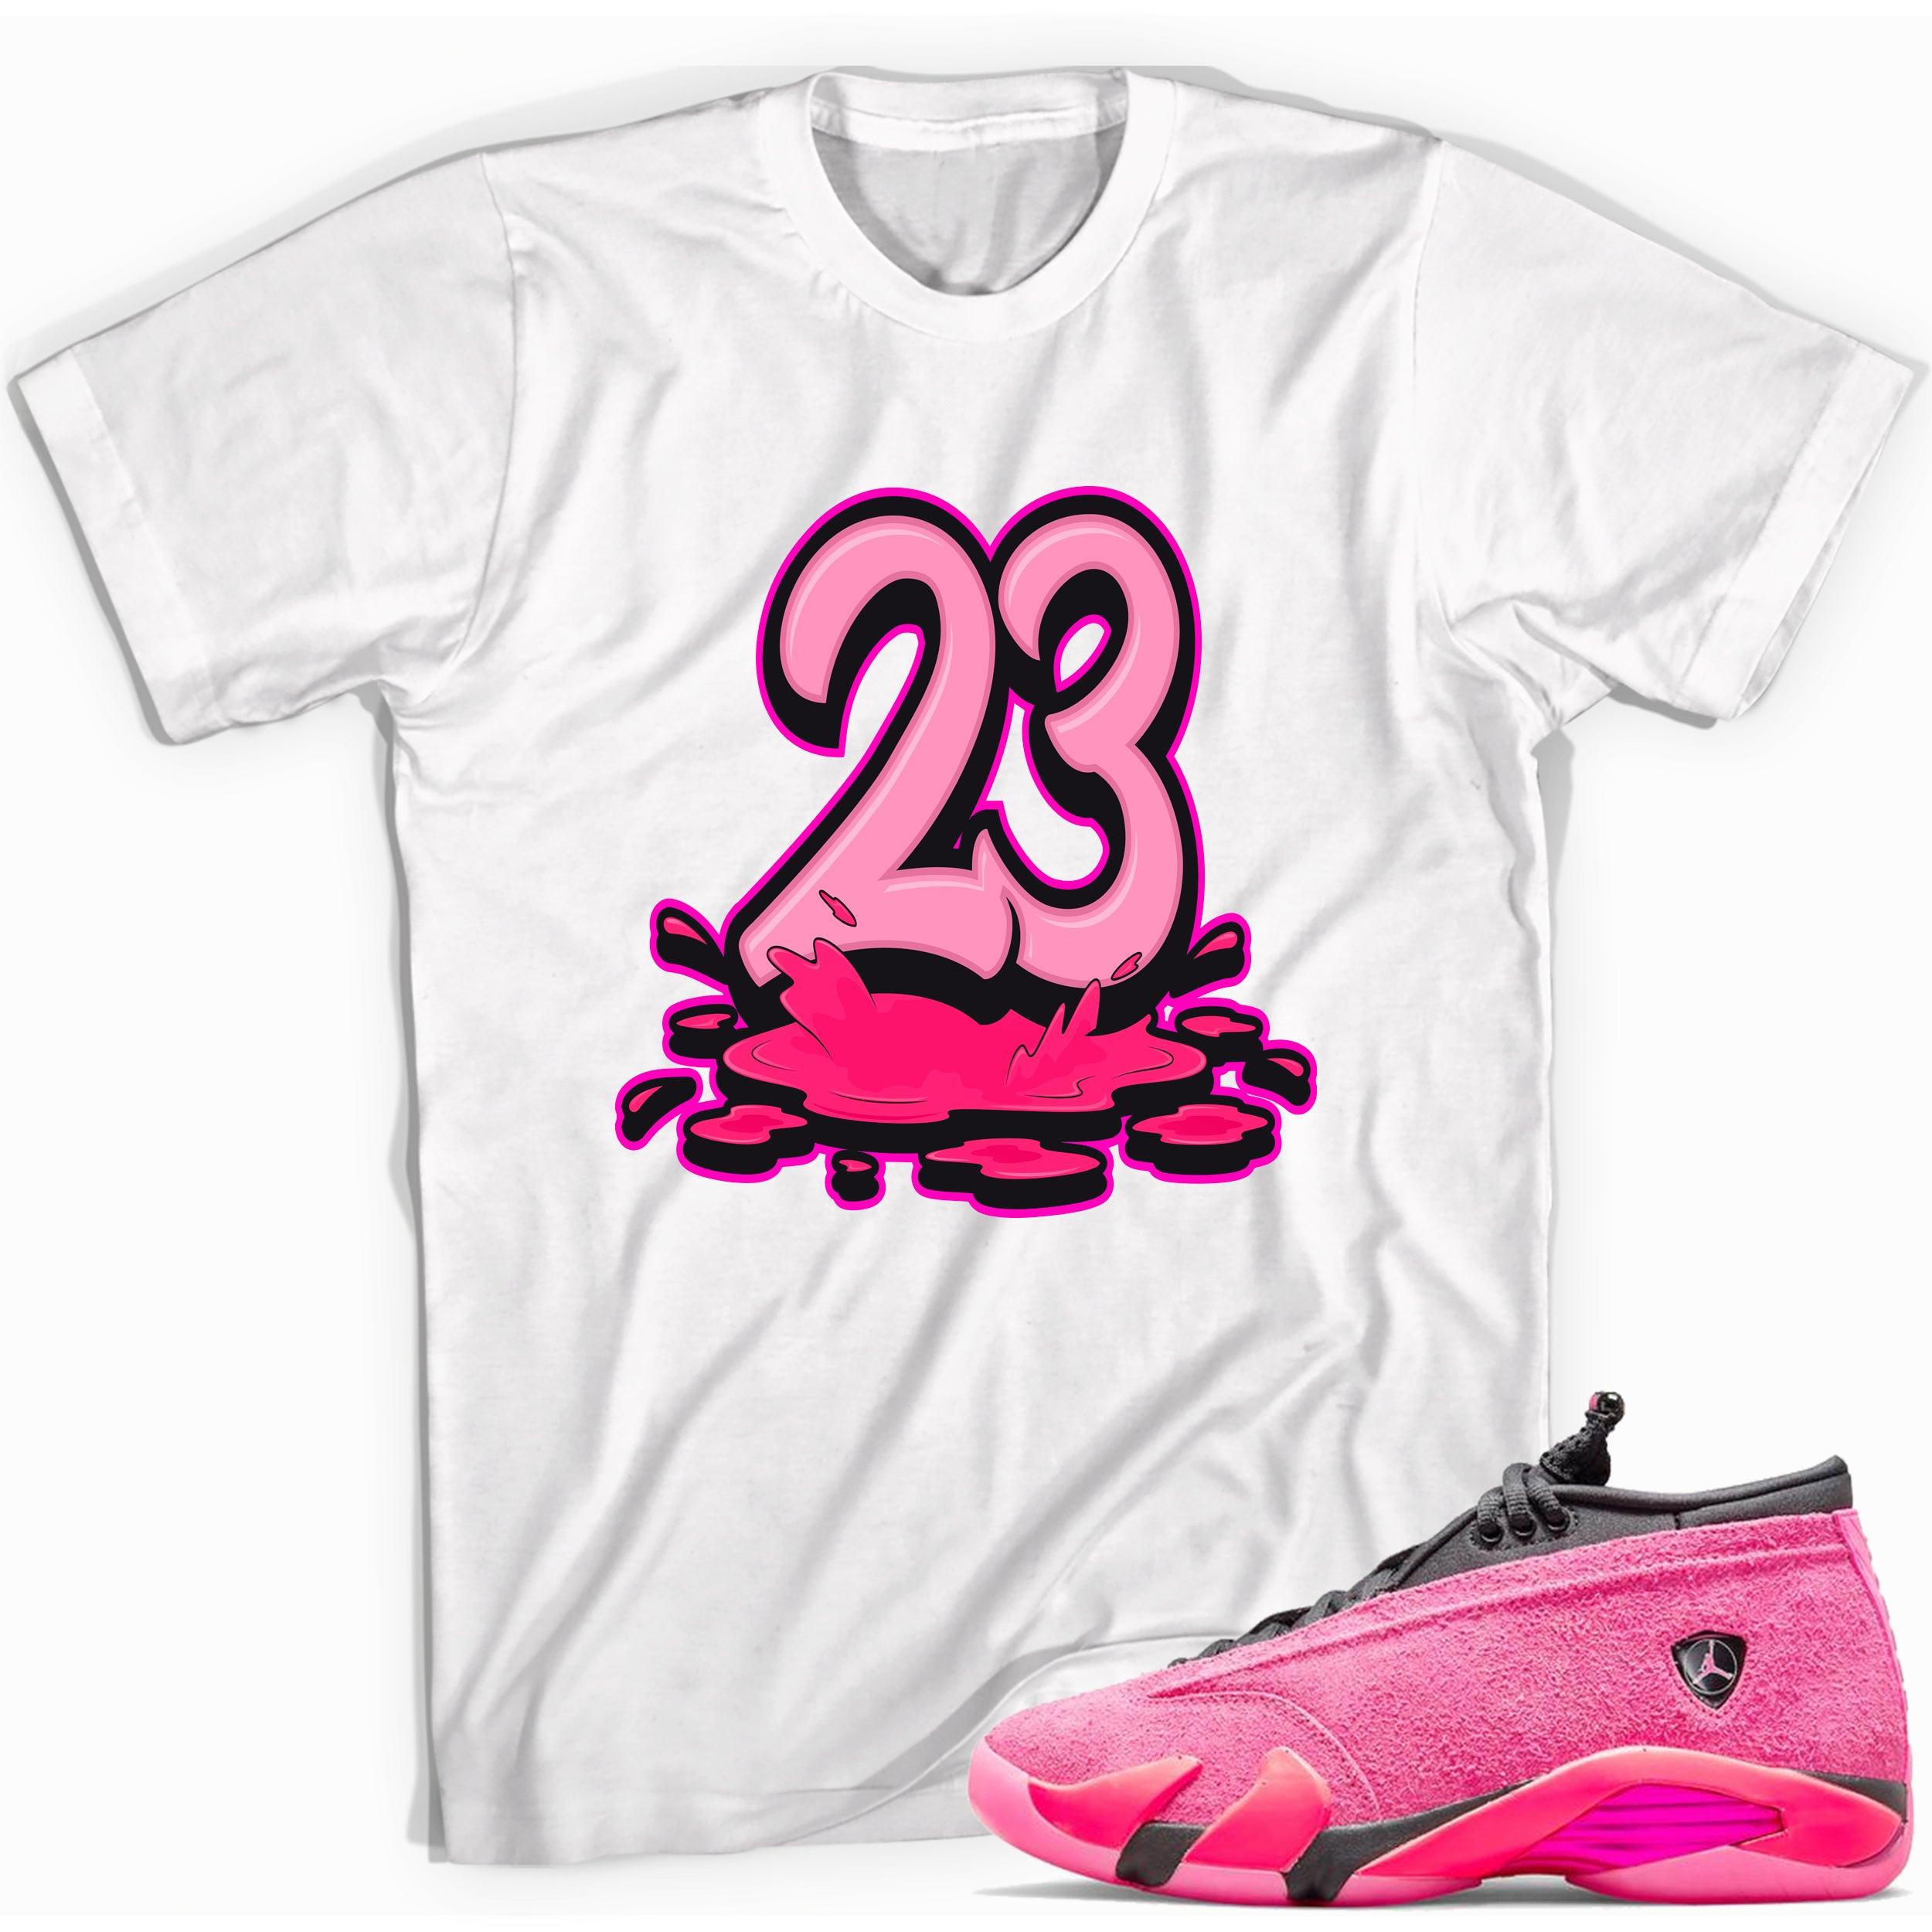 Jordan 14s Low Shocking Pink Shirt - 23 Melting